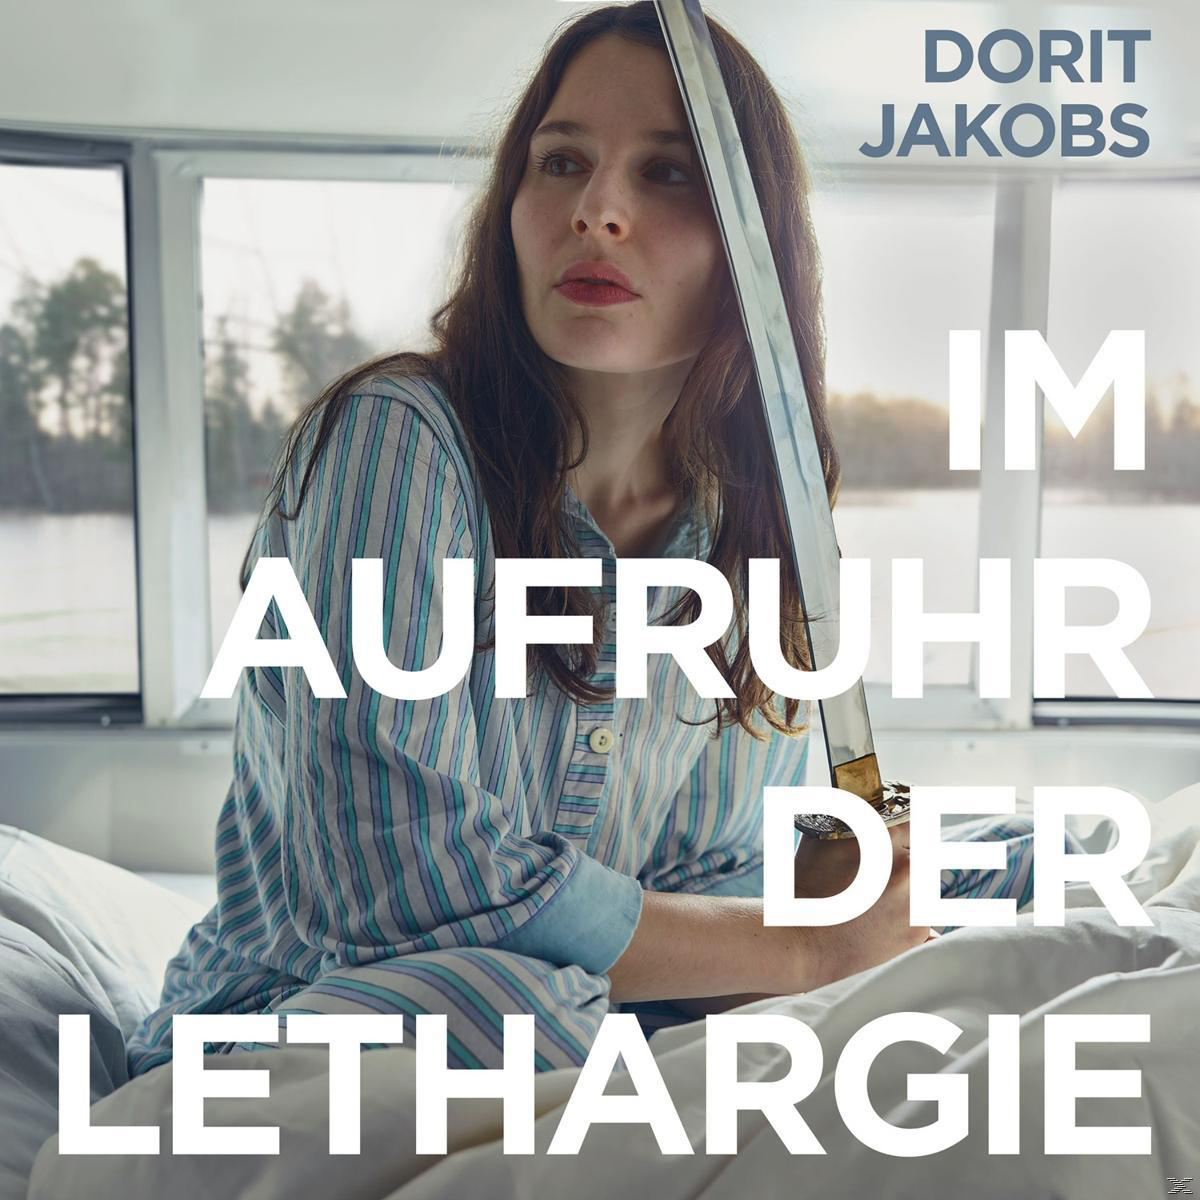 Dorit Jakobs (Vinyl) Lethargie der - Aufruhr - Im